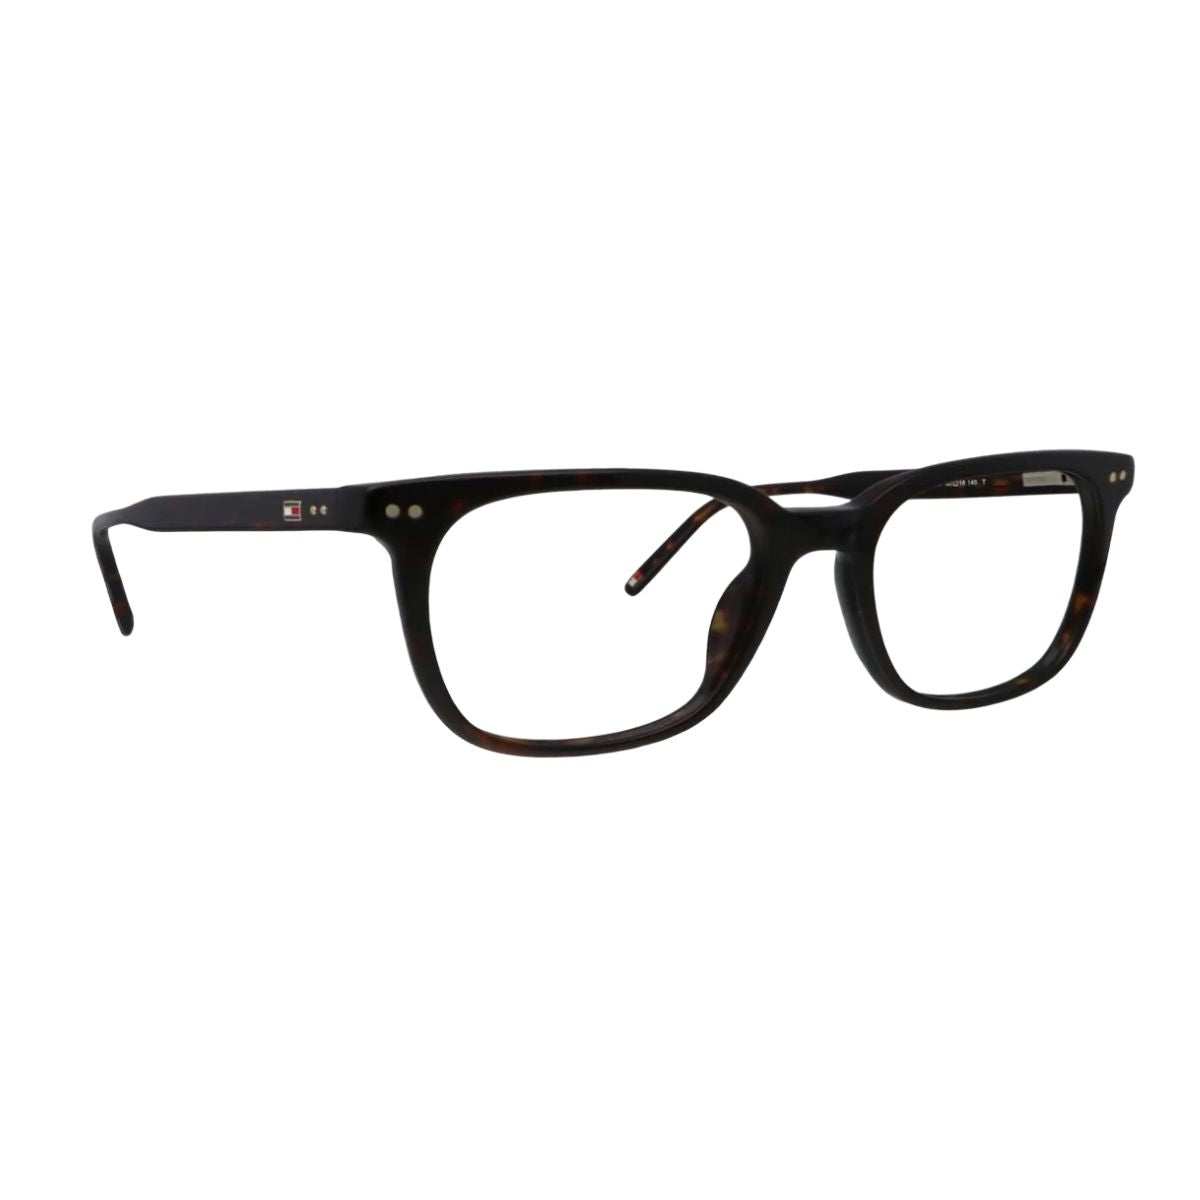 "best Tommy Hilfiger 3183 C2 optical eyewear frame for men's at optorium"